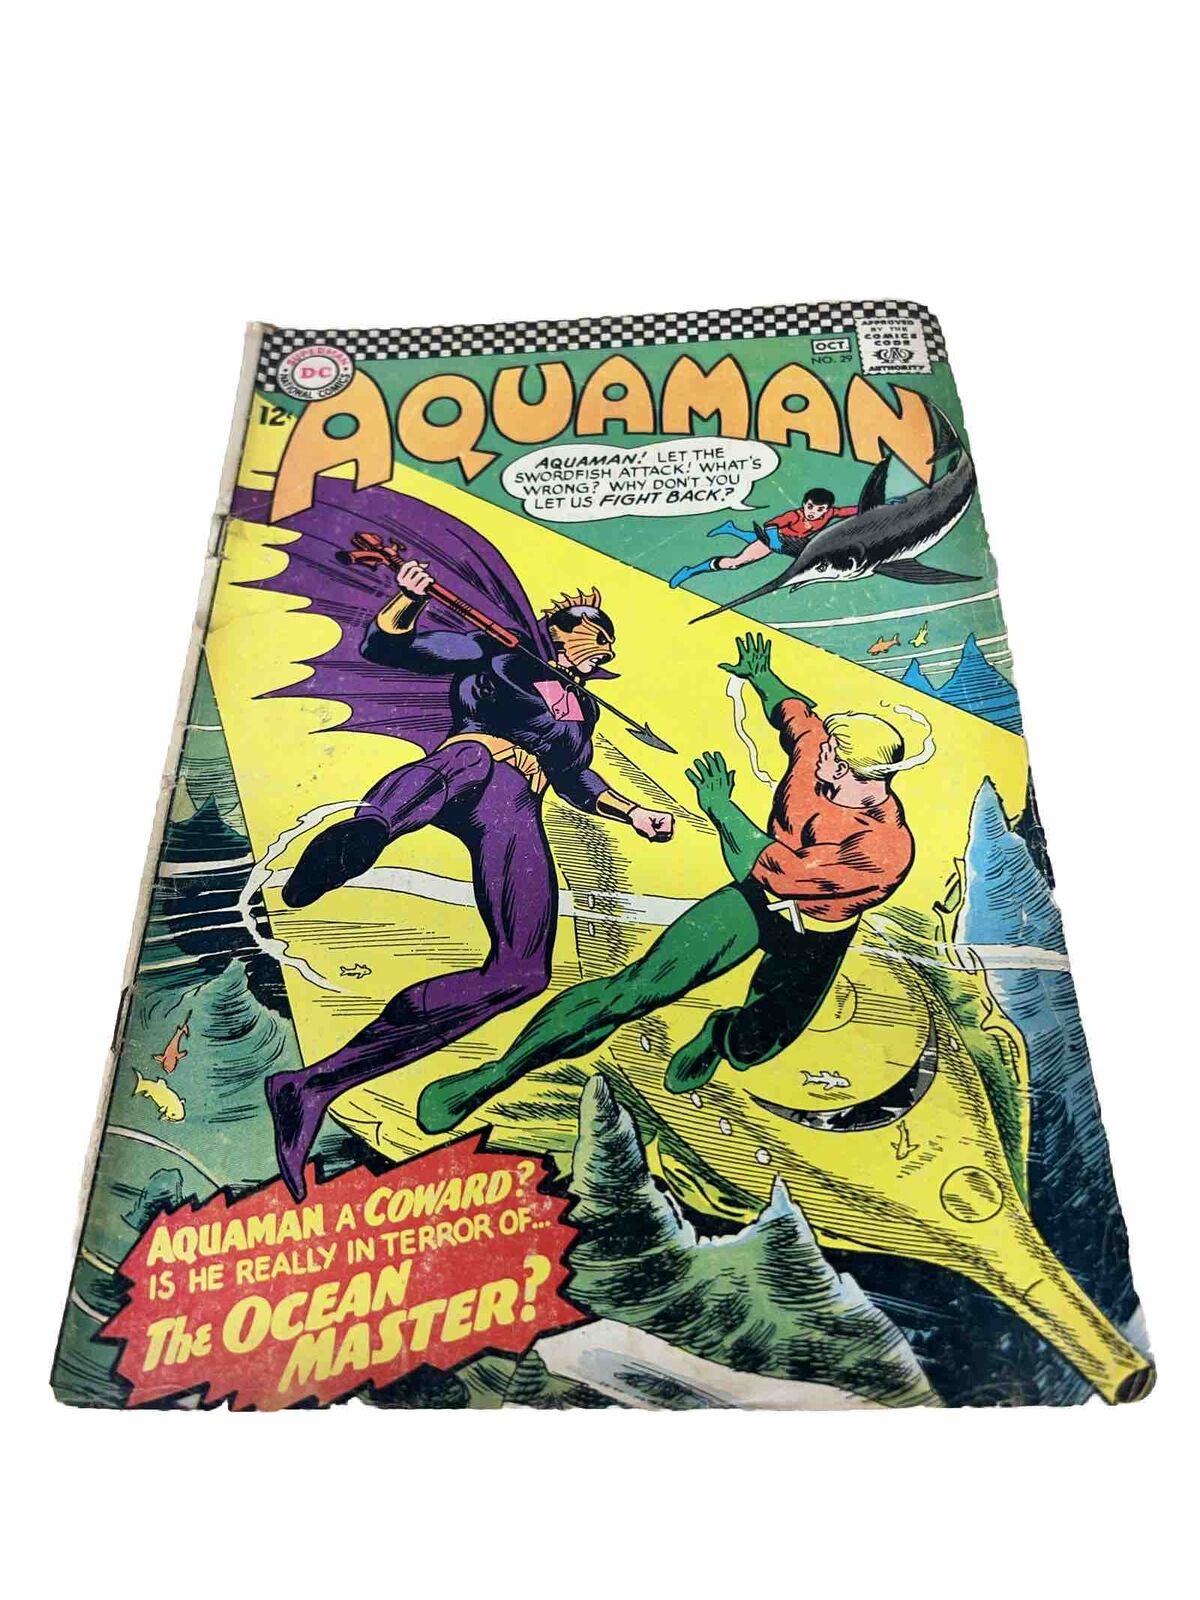 Aquaman 29 Vg Very Good 4.0 DC Comics